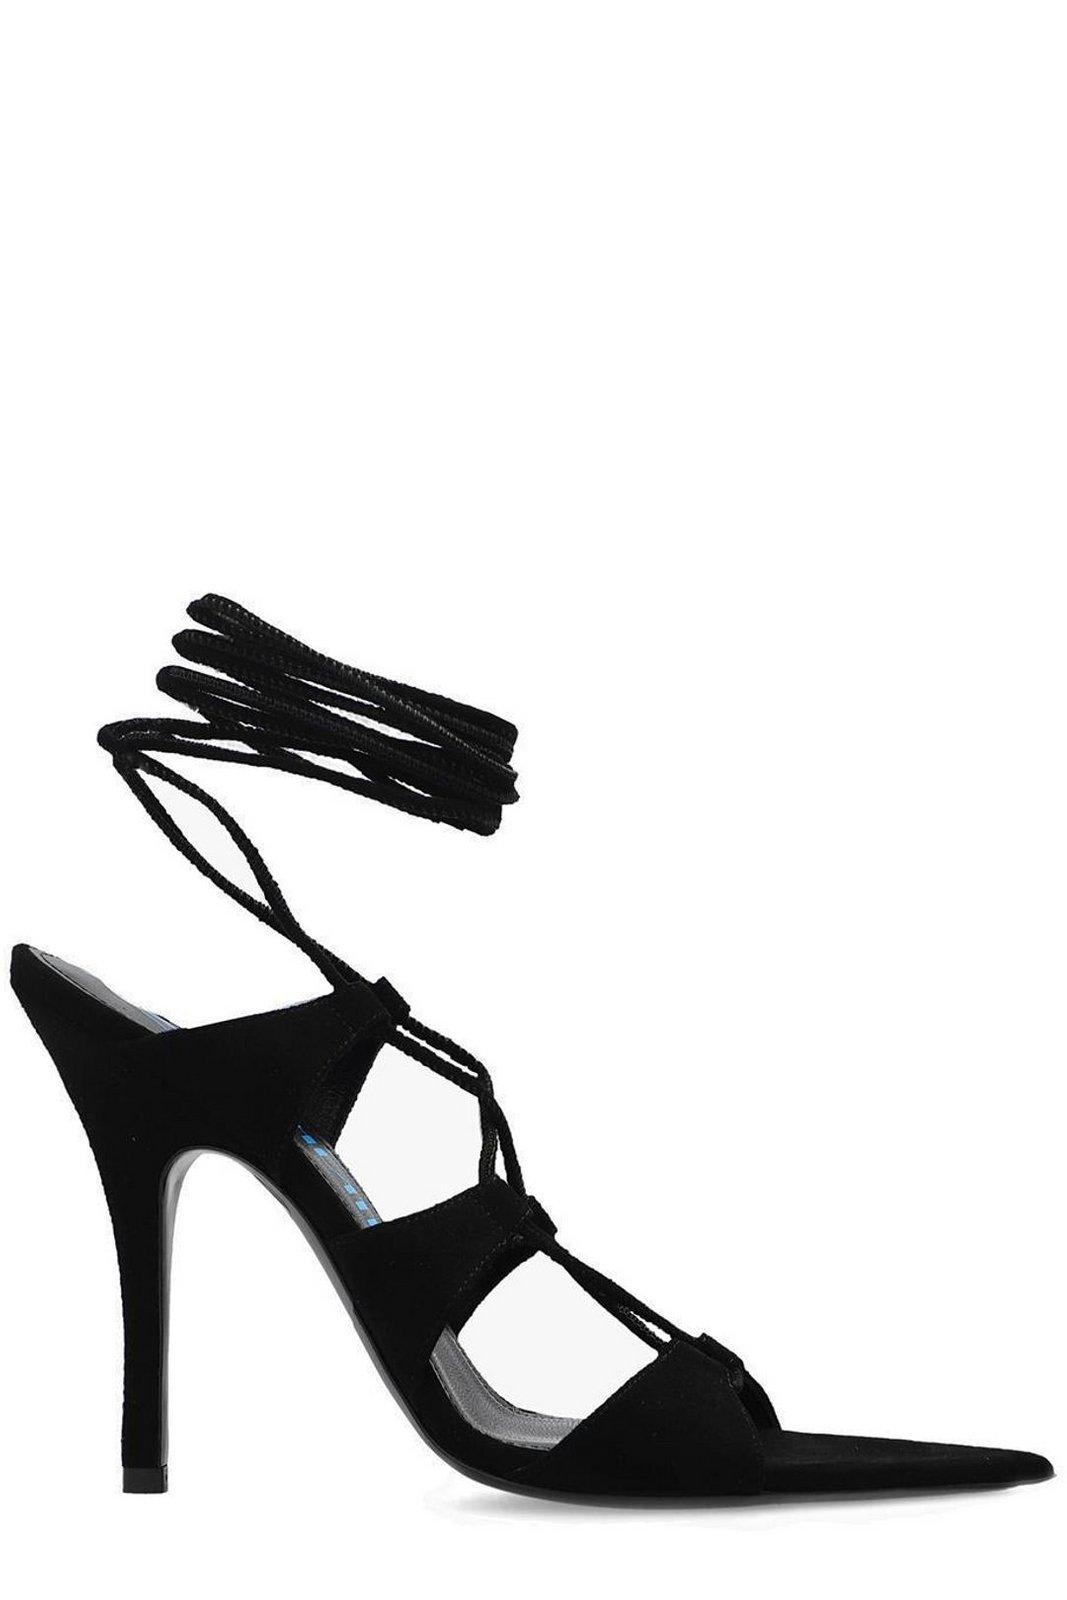 Shop Attico Renee Lace-up Ankle Strap Sandals